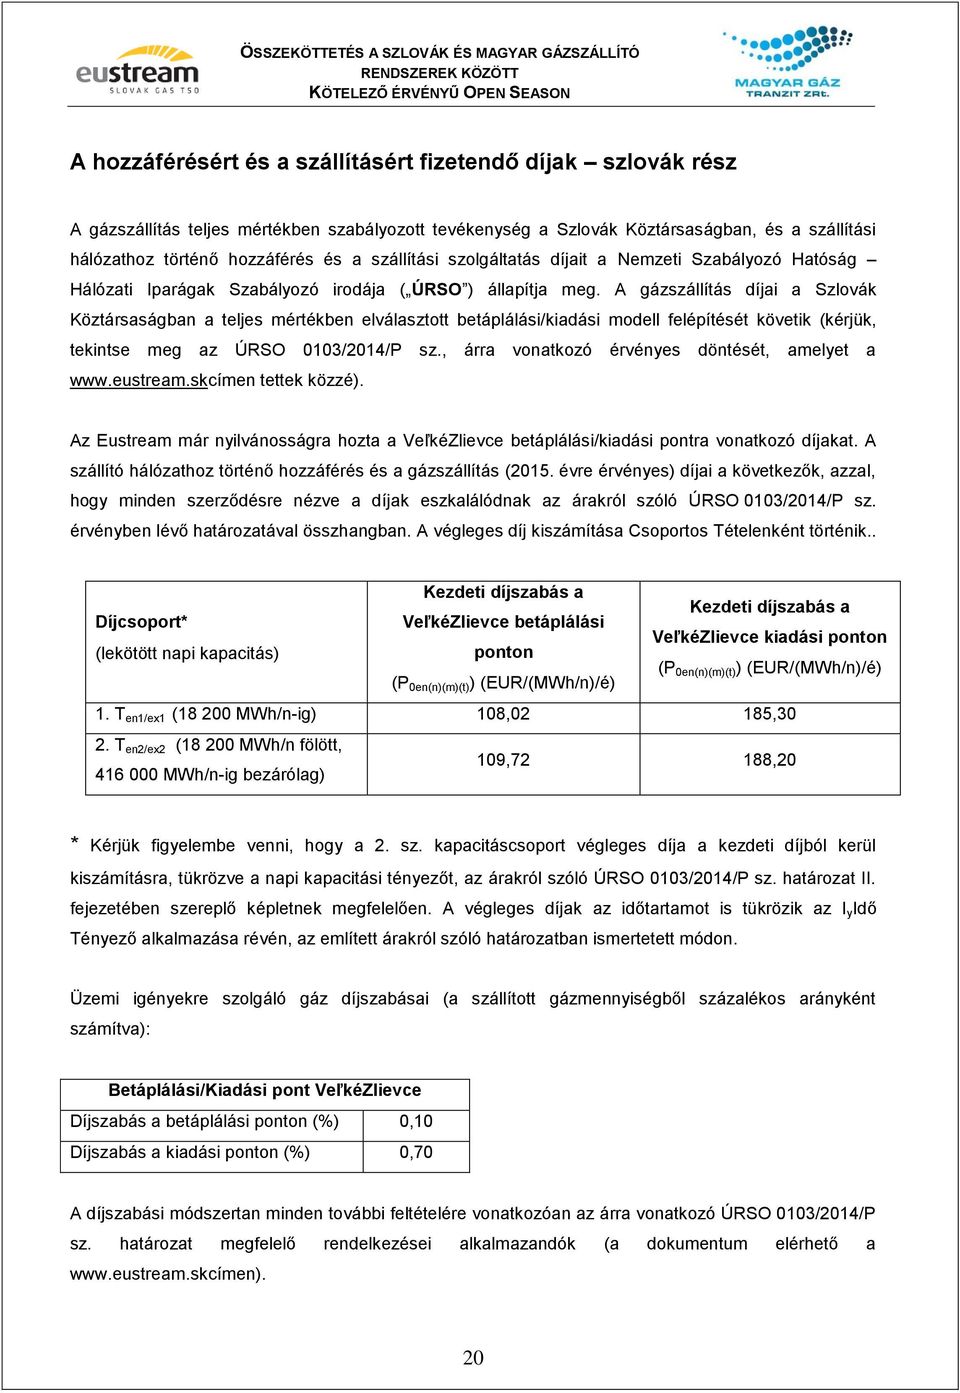 A gázszállítás díjai a Szlovák Köztársaságban a teljes mértékben elválasztott betáplálási/kiadási modell felépítését követik (kérjük, tekintse meg az ÚRSO 0103/2014/P sz.